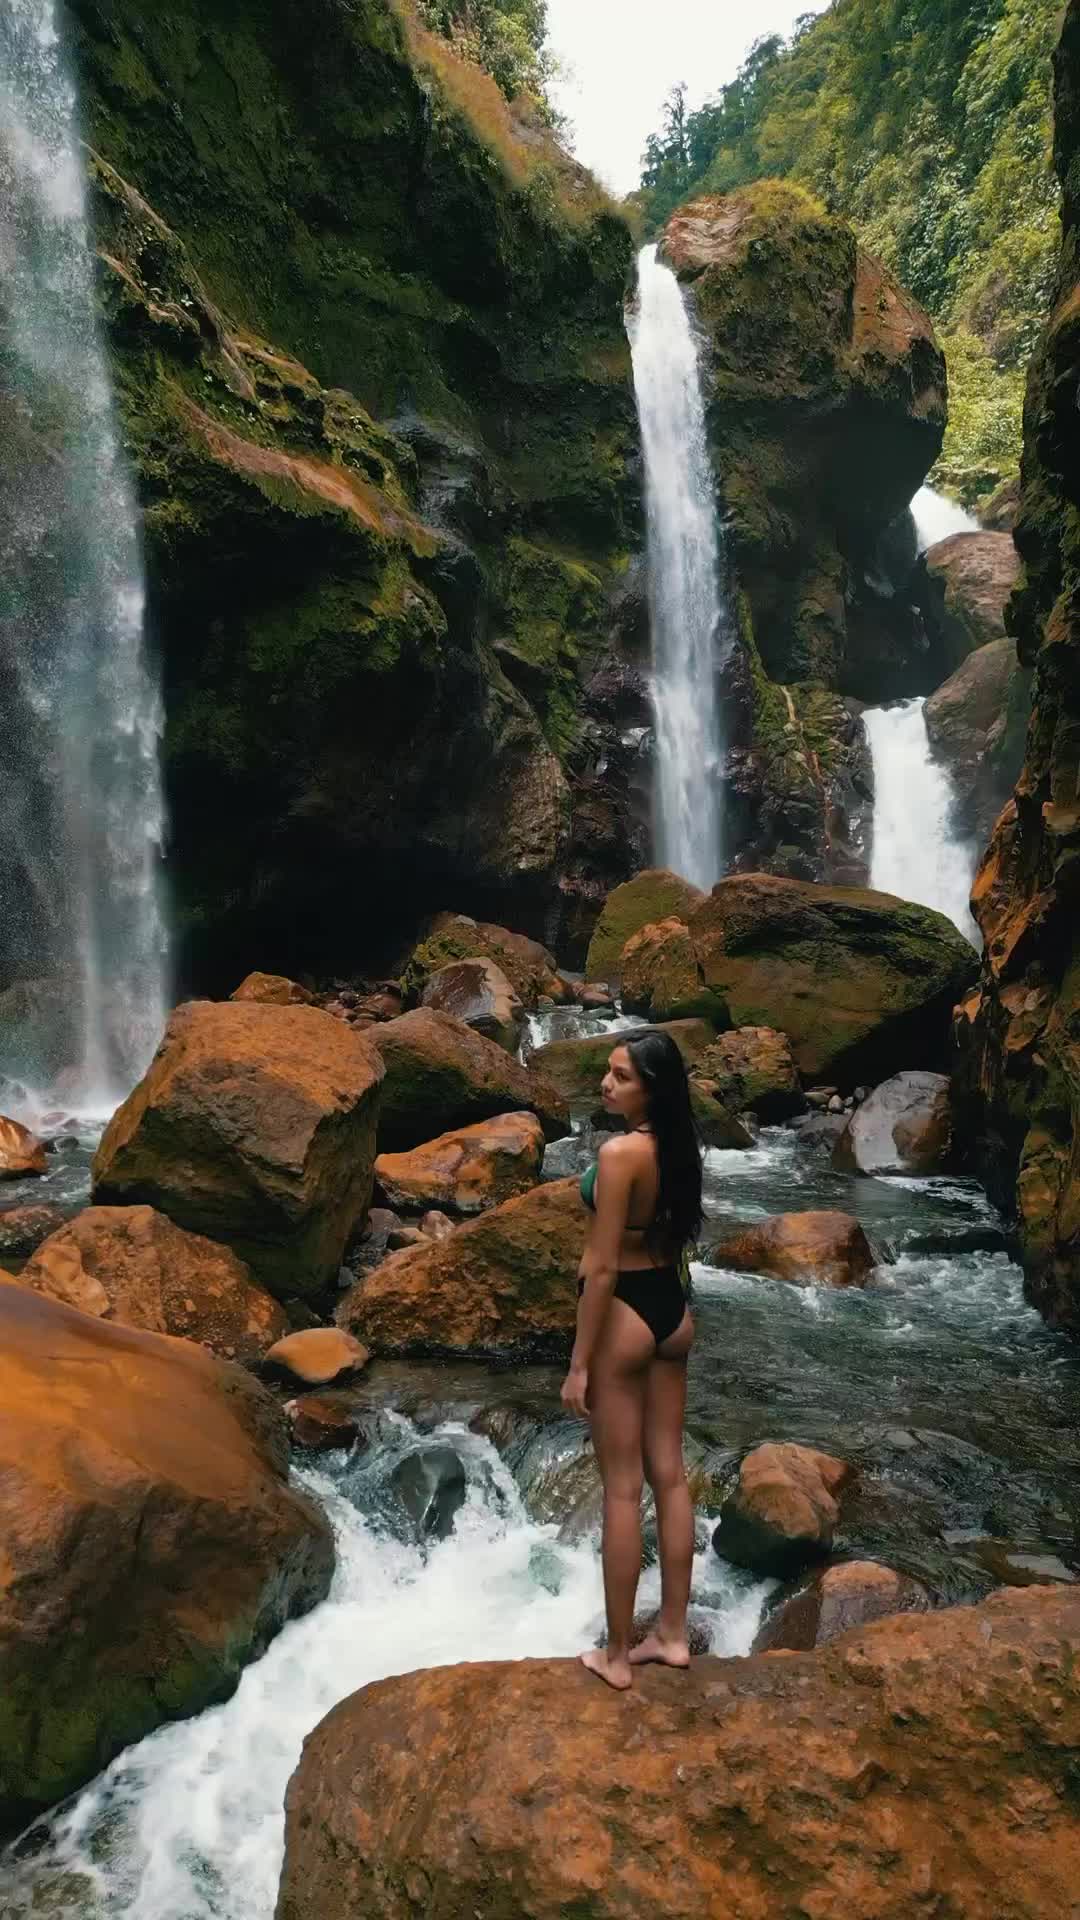 Lost in the Jungle: A Costa Rican Drone Adventure